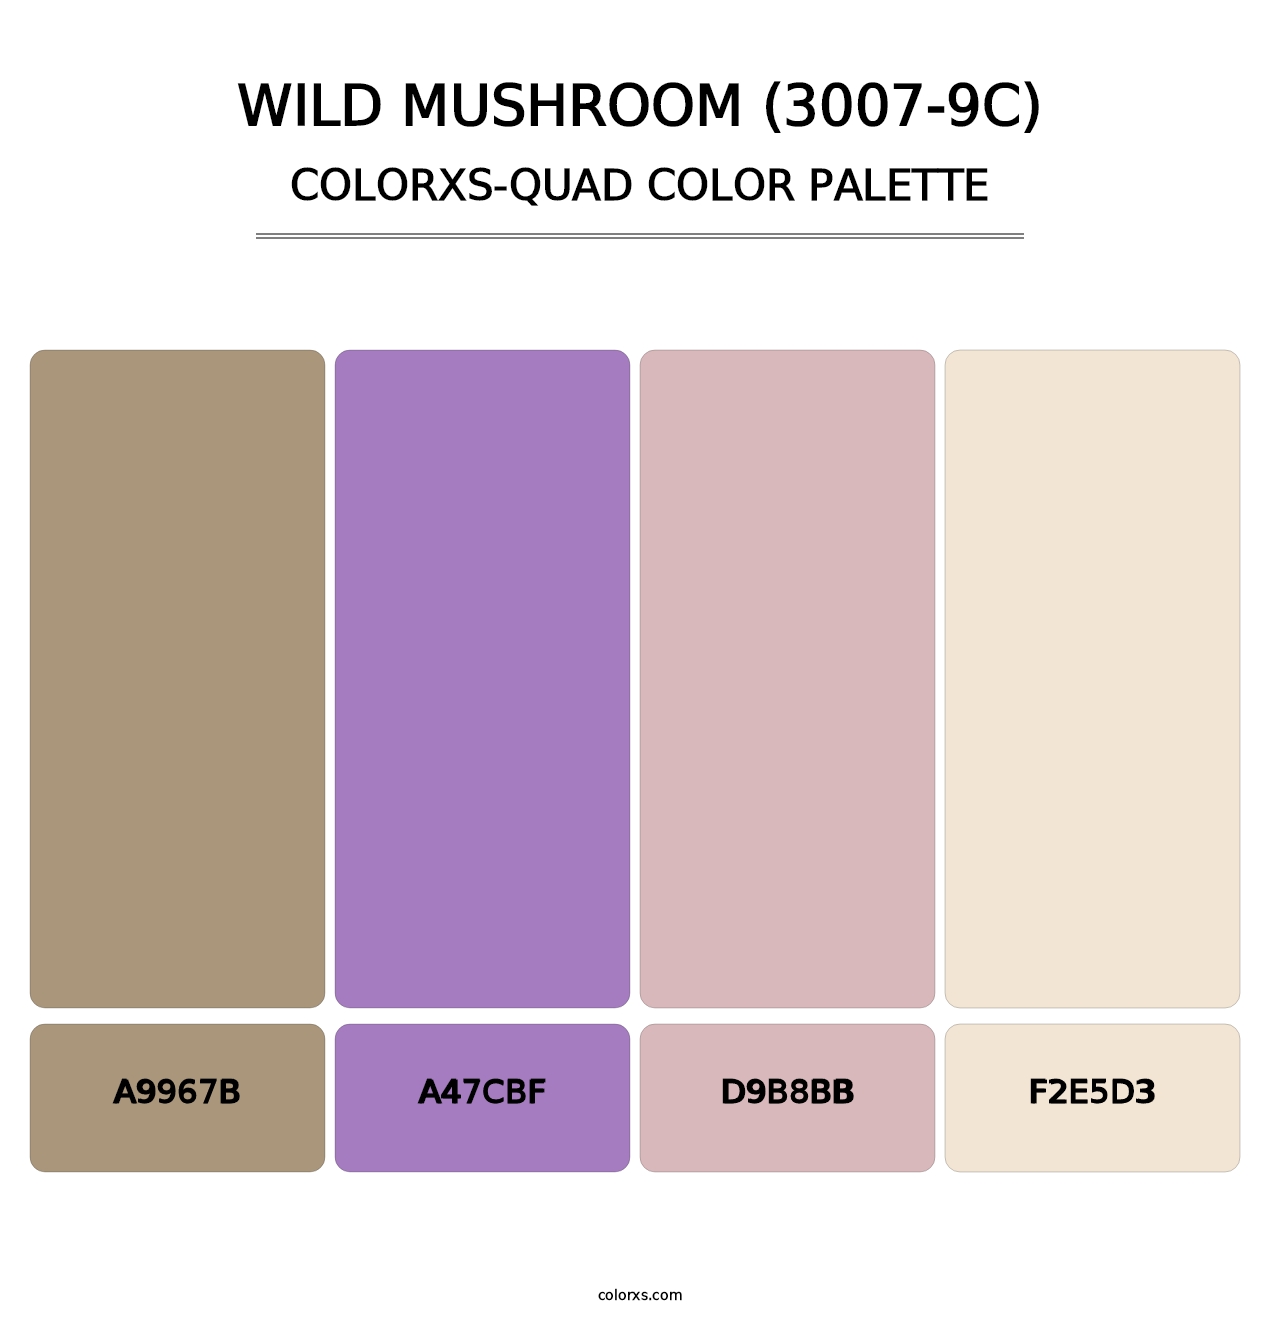 Wild Mushroom (3007-9C) - Colorxs Quad Palette